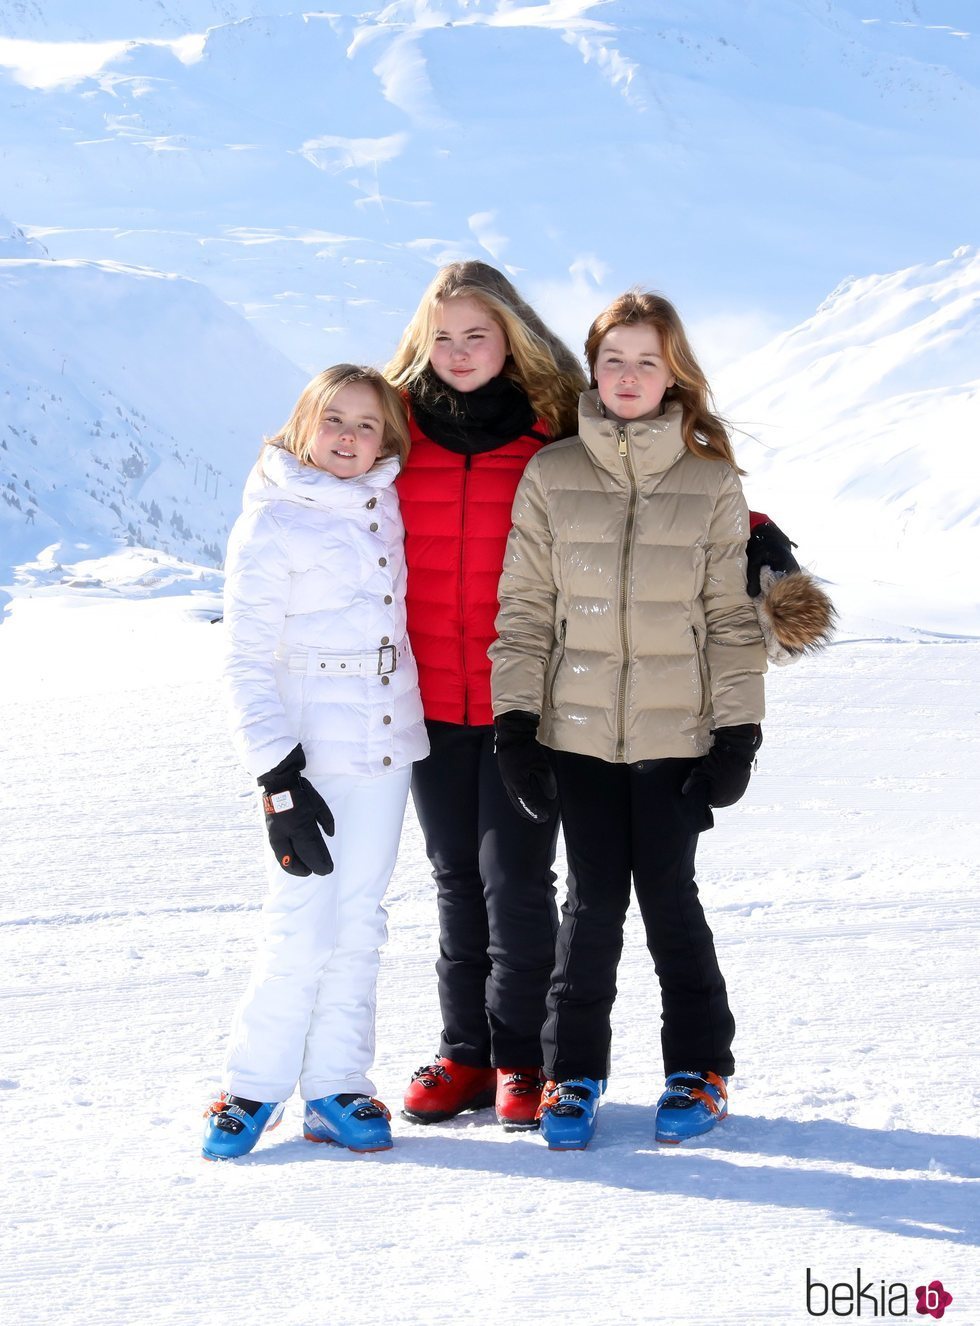 Ariane, Amalia y Alexia de Holanda en su posado invernal en Lech